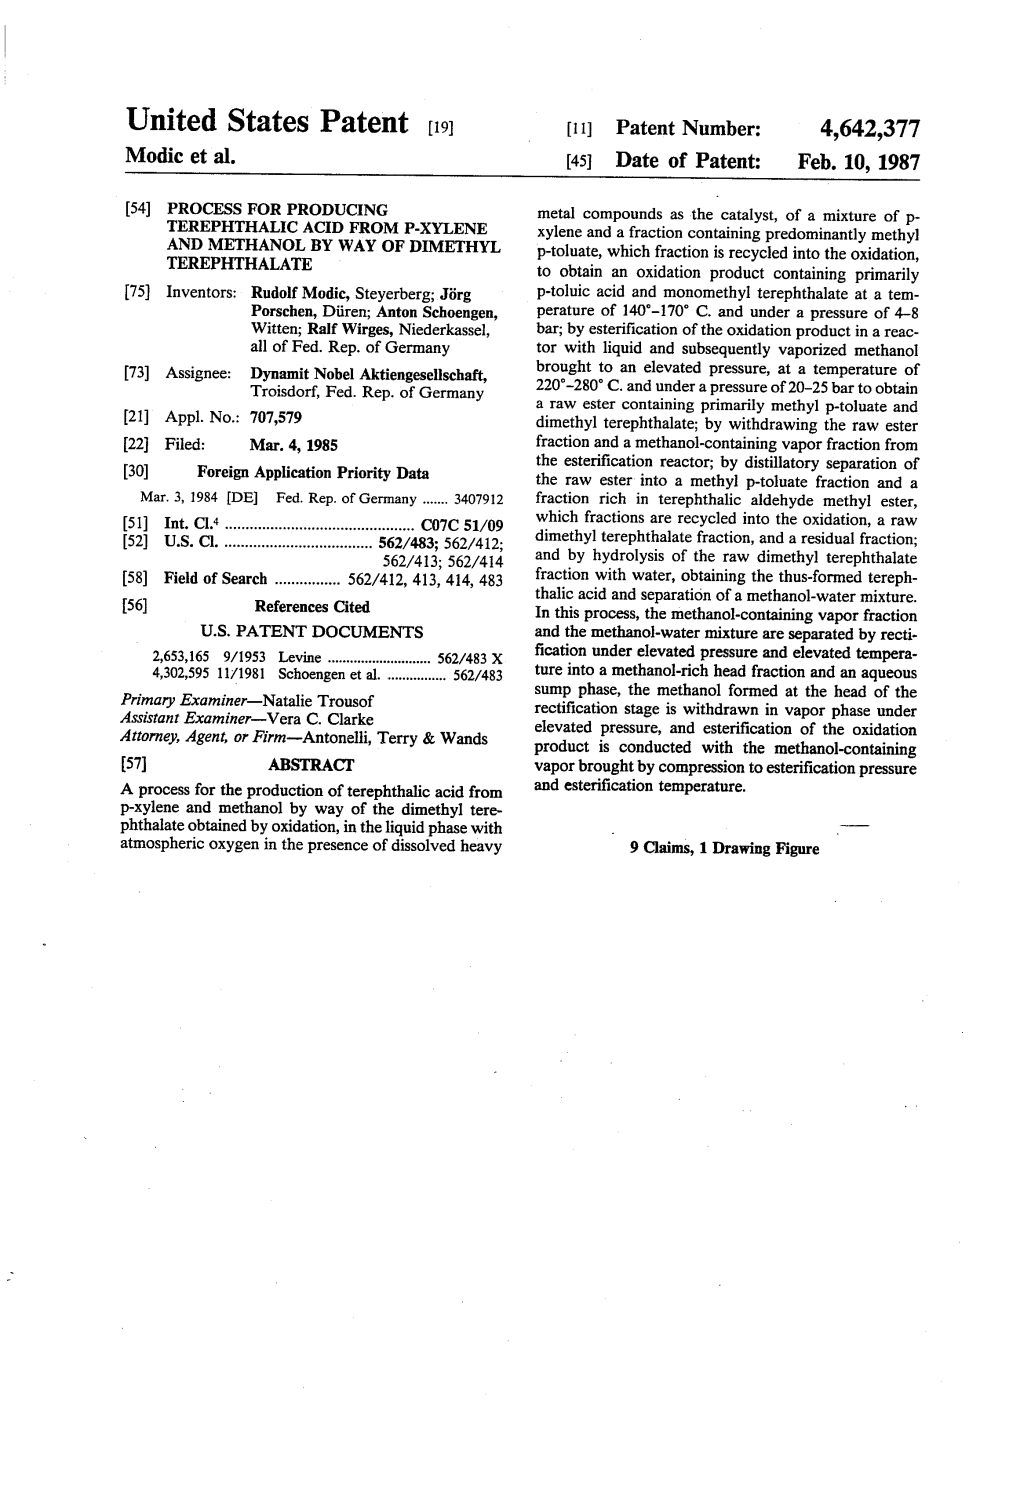 United States Patent (19) 11 Patent Number: 4,642,377 Modic Et Al